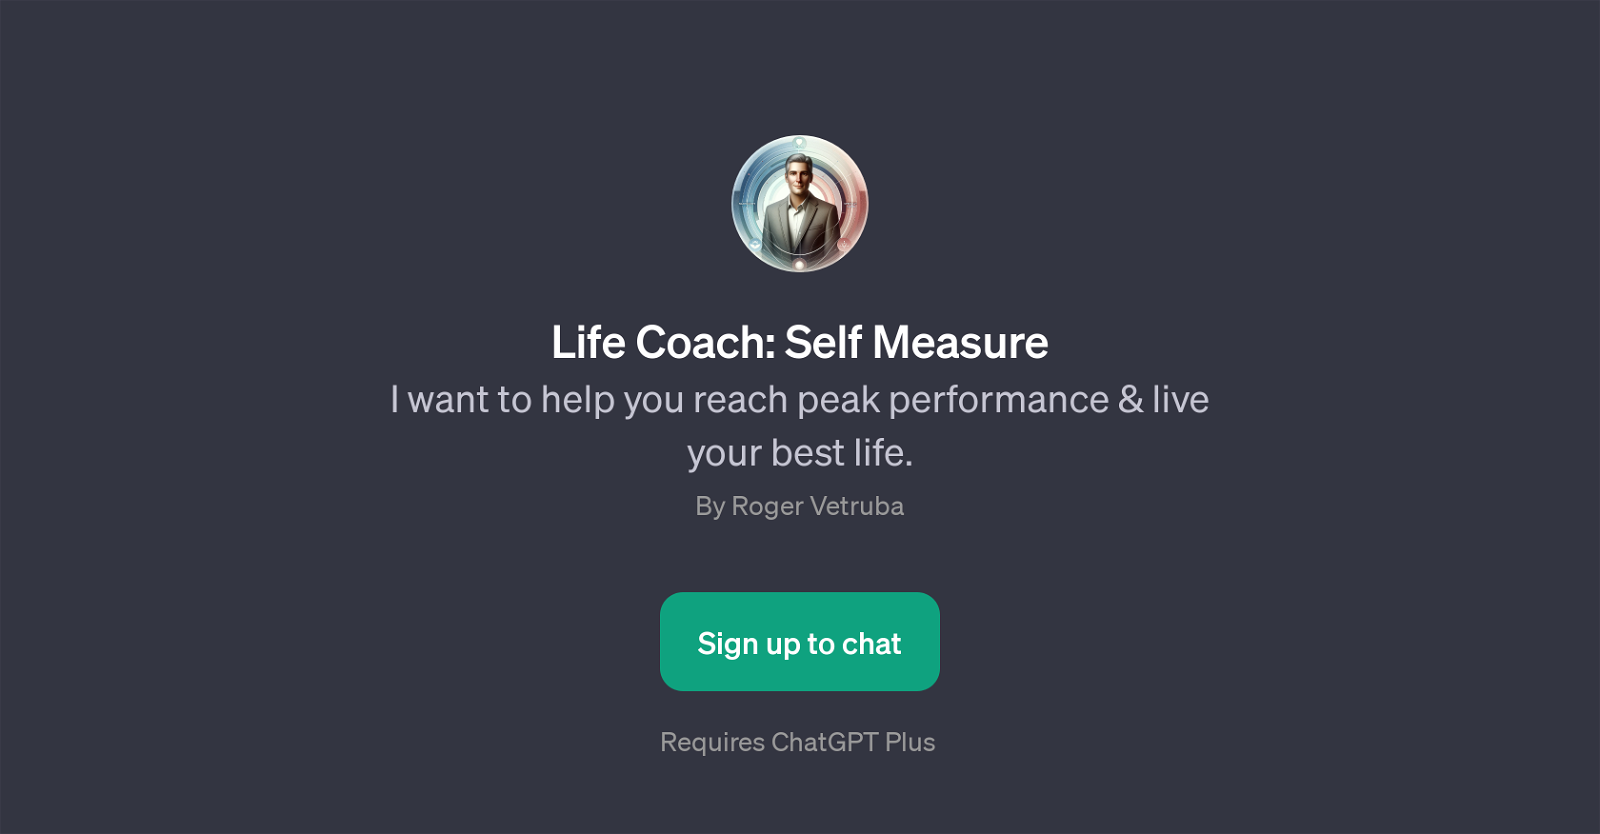 Life Coach: Self Measure website